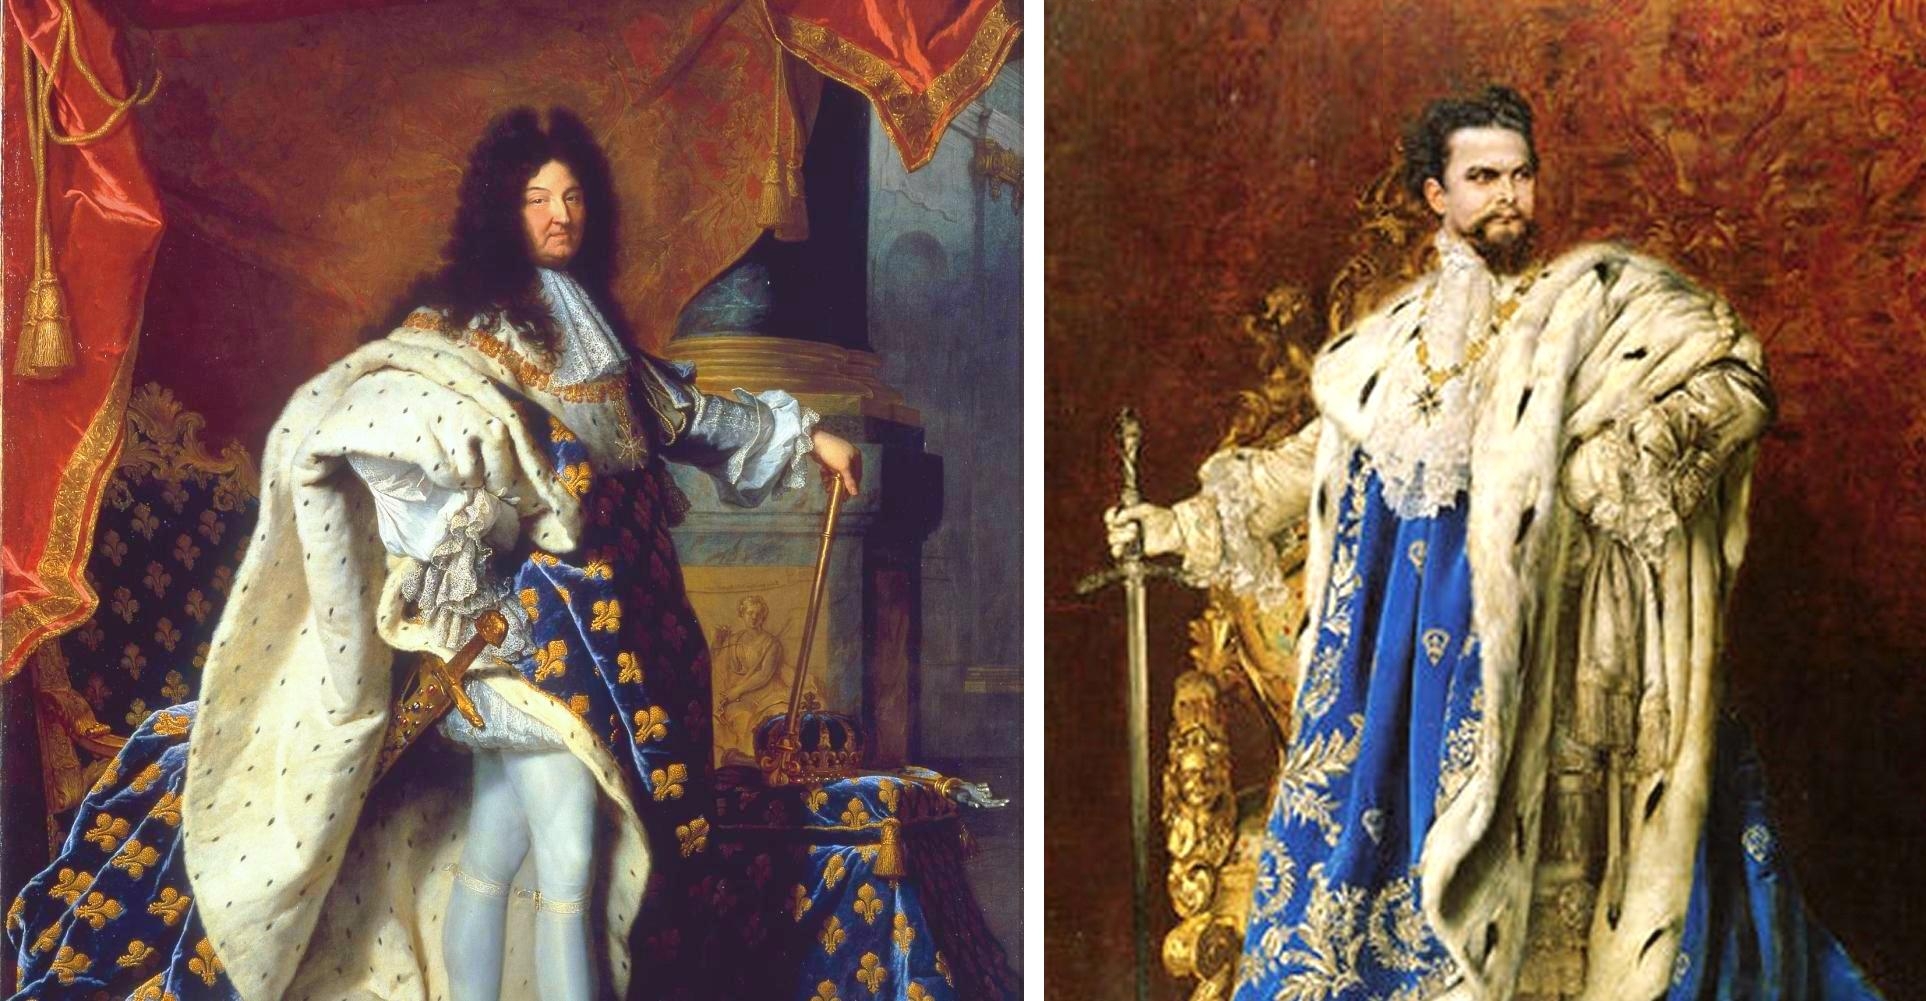 Wie sich die Bilder gleichen: Links der französische Sonnenkönig XIV.,
rechts sein bayerischer Namensvetter Ludwig II. - trotz fast zweier
Jahrhunderte Abstand.